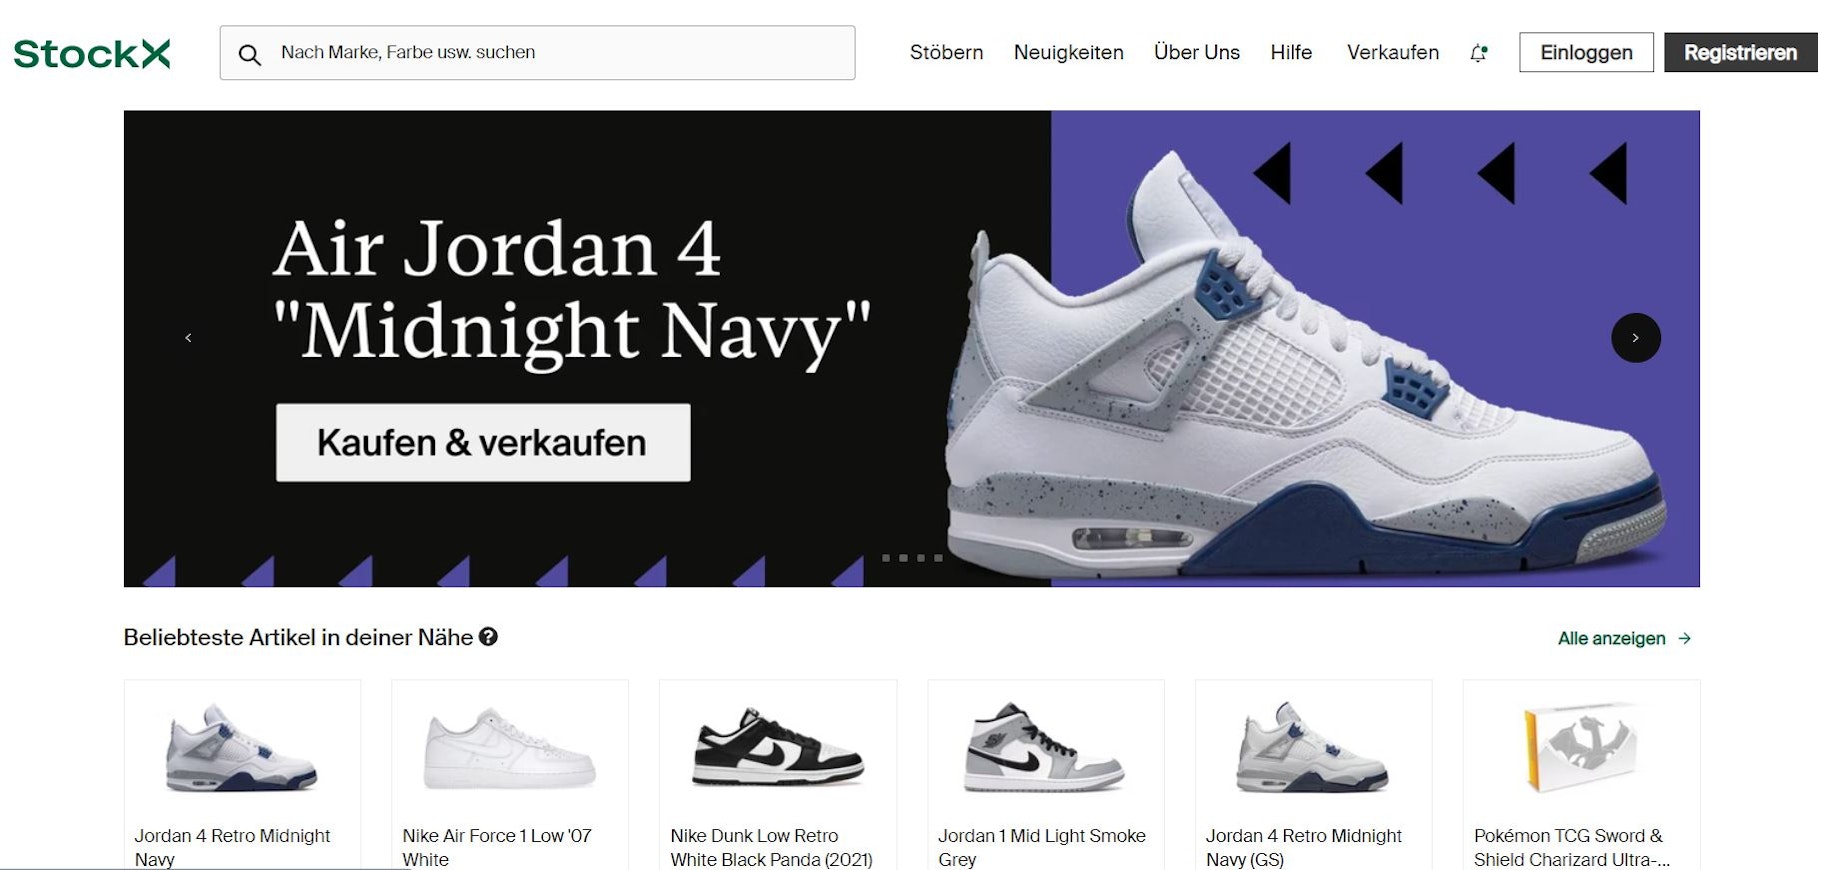 Nebenbei Geld verdienen mit Sneakern auf StockX - Screenshot der Startseite